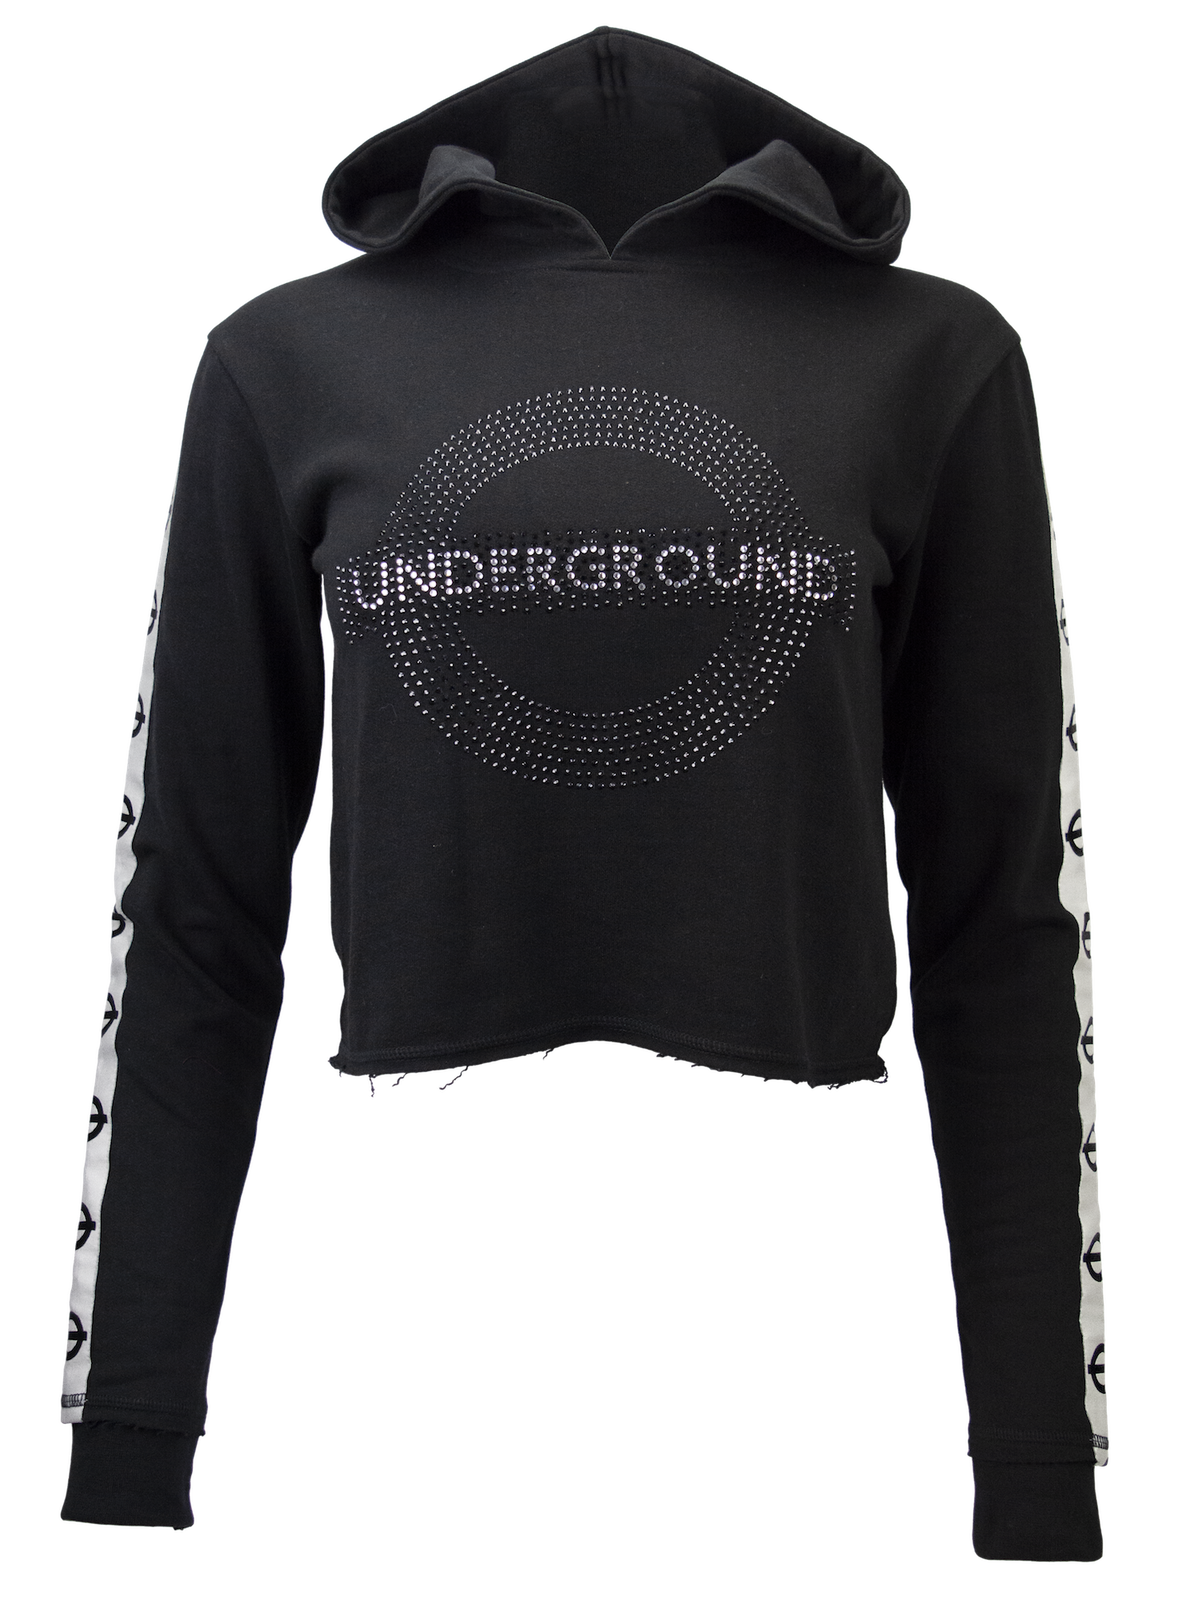 Licensed Underground Girls-Ladies Teens Hooded Crop top Diamante Studs